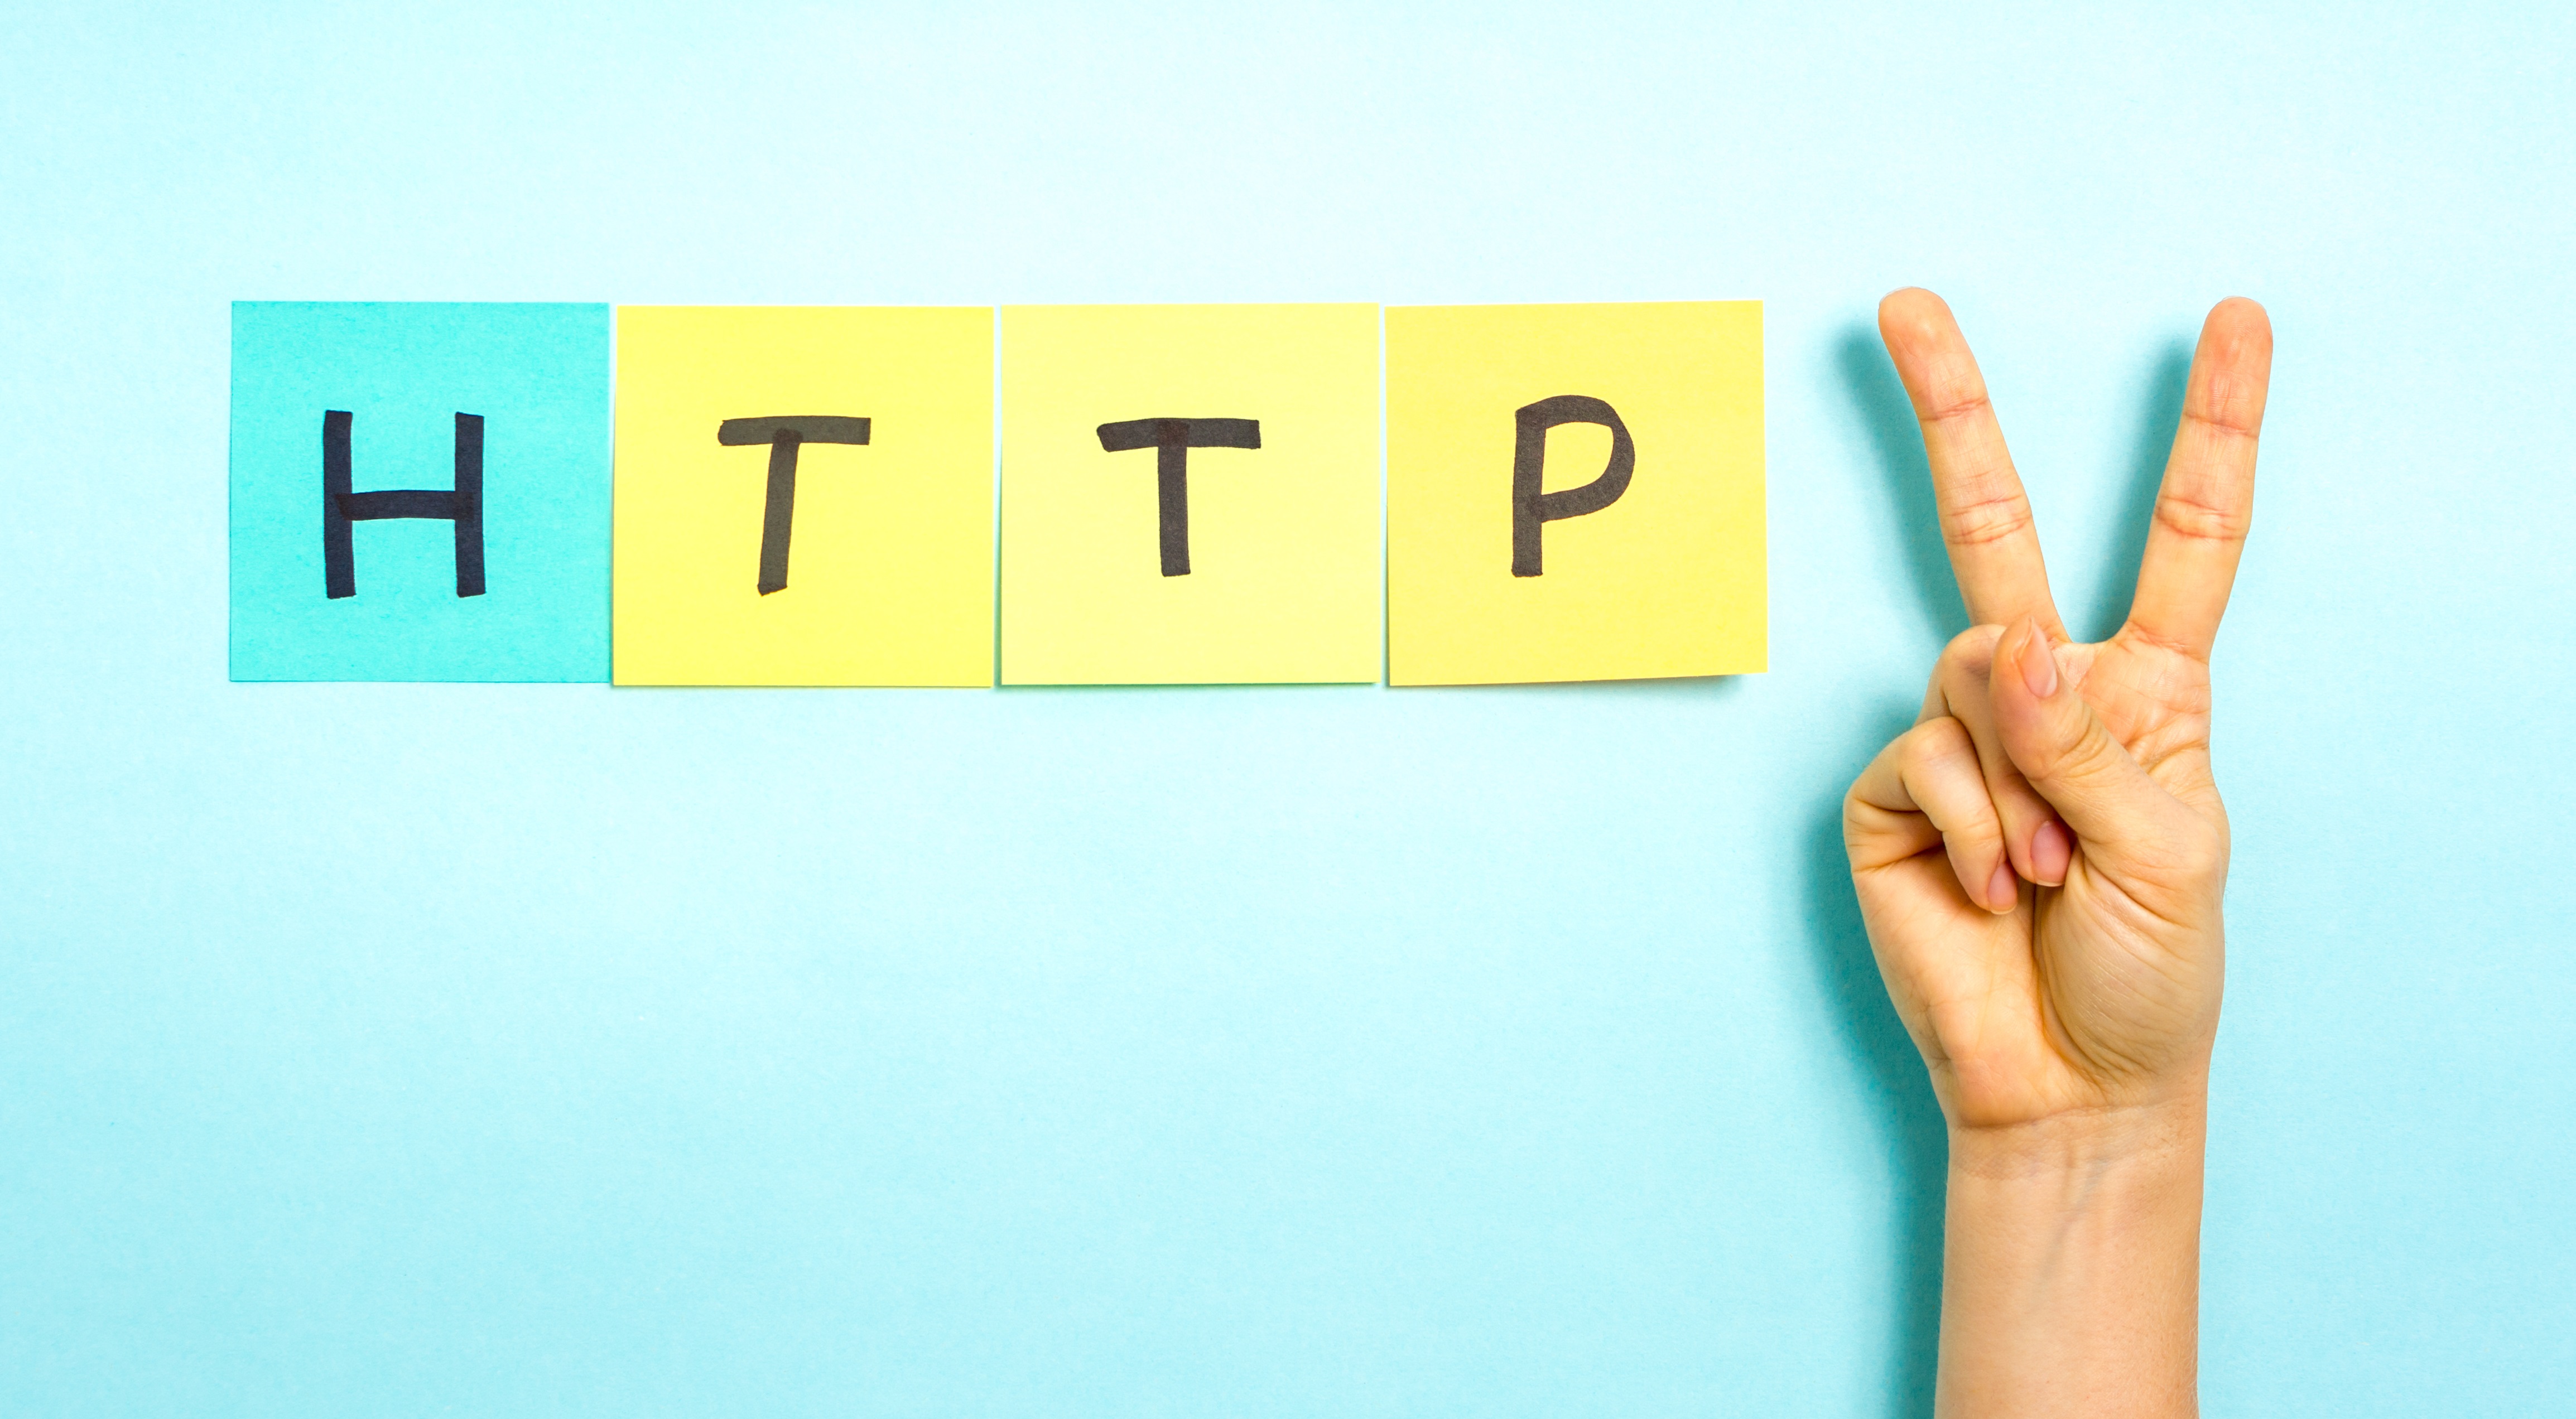 HTTP 2. Hand making V sign gesture, success symbol, on blue background.